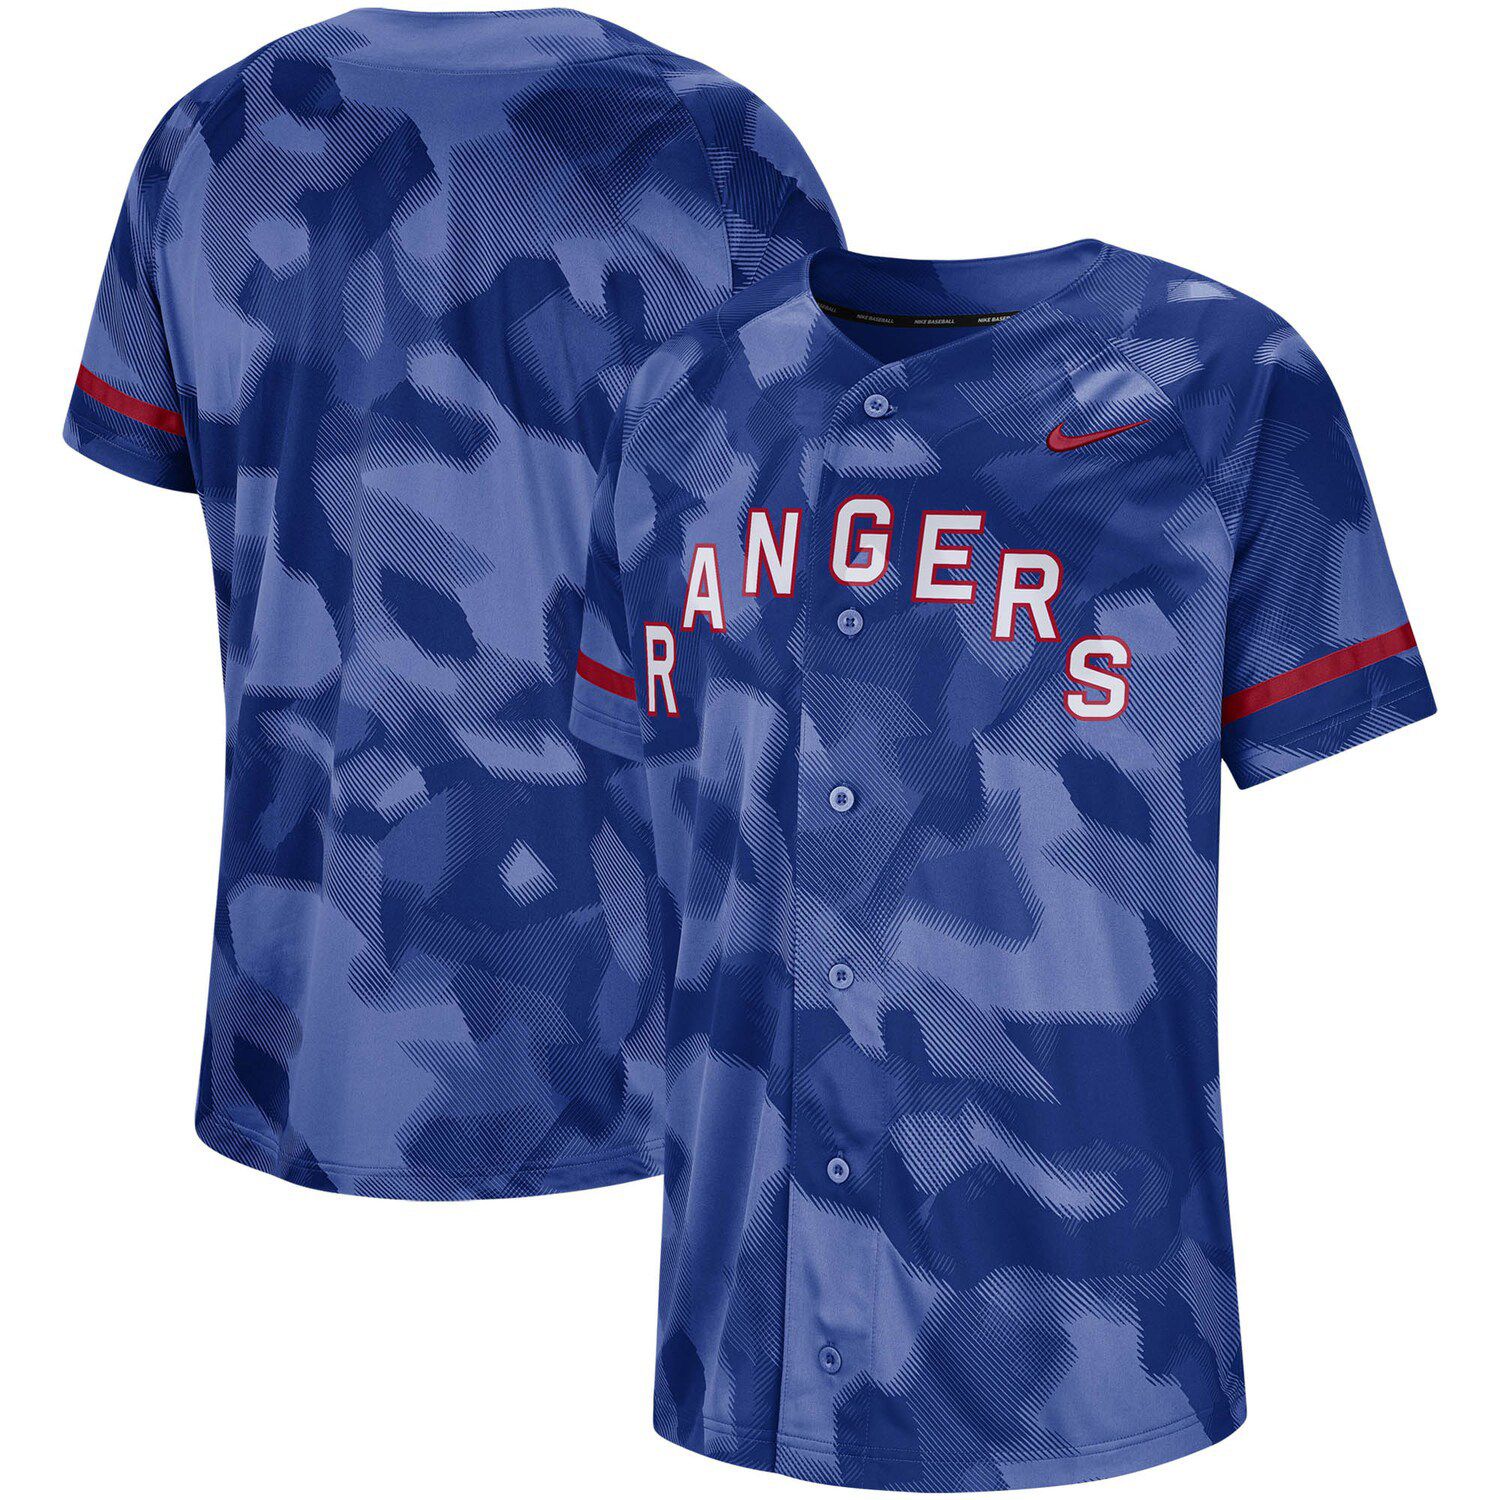 Men's Nike Royal Texas Rangers Camo Jersey